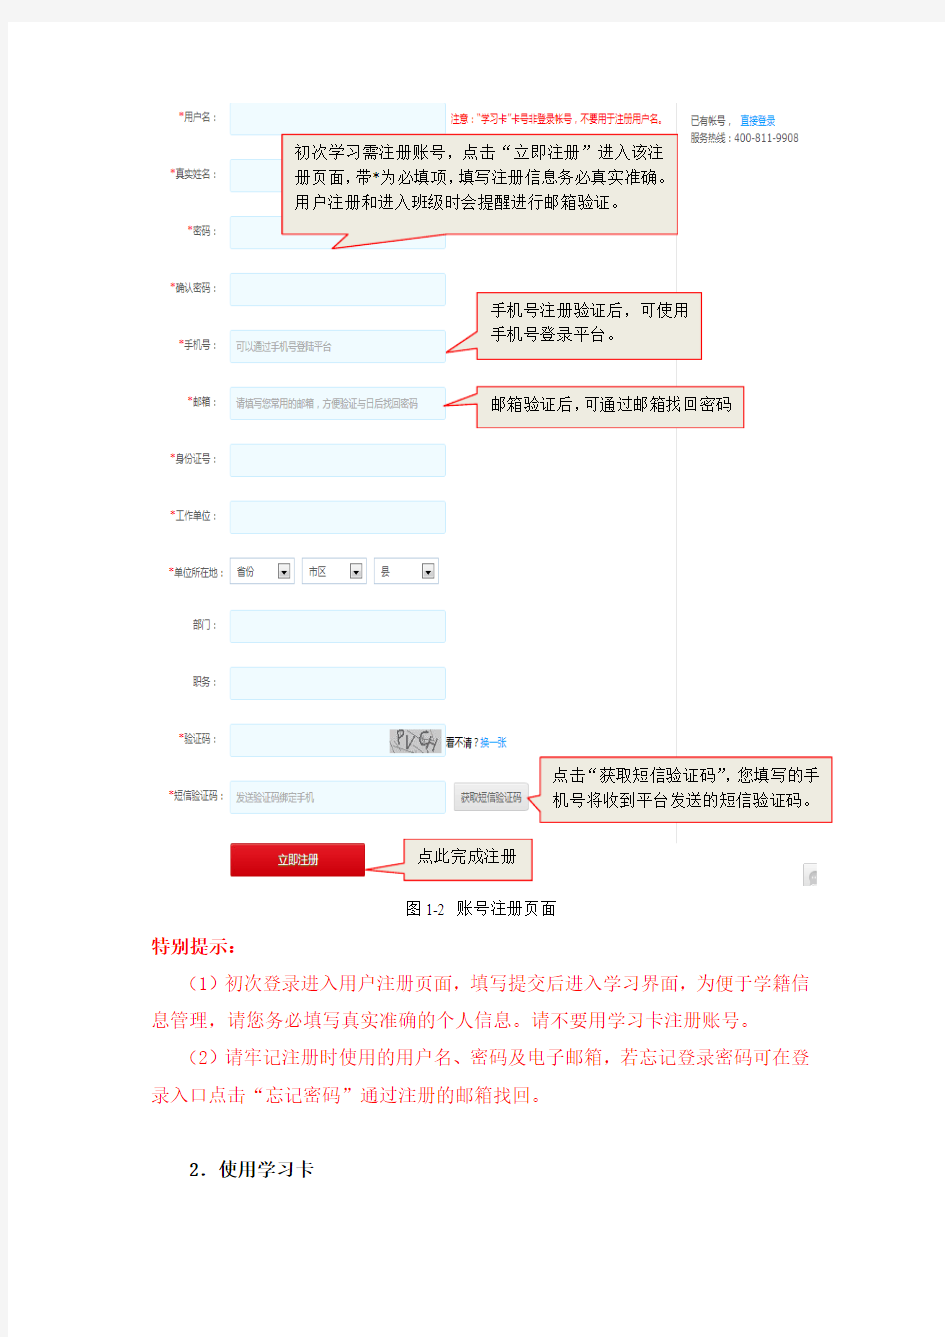 中国教育干部网络学院学员学习平台操作手册20150424